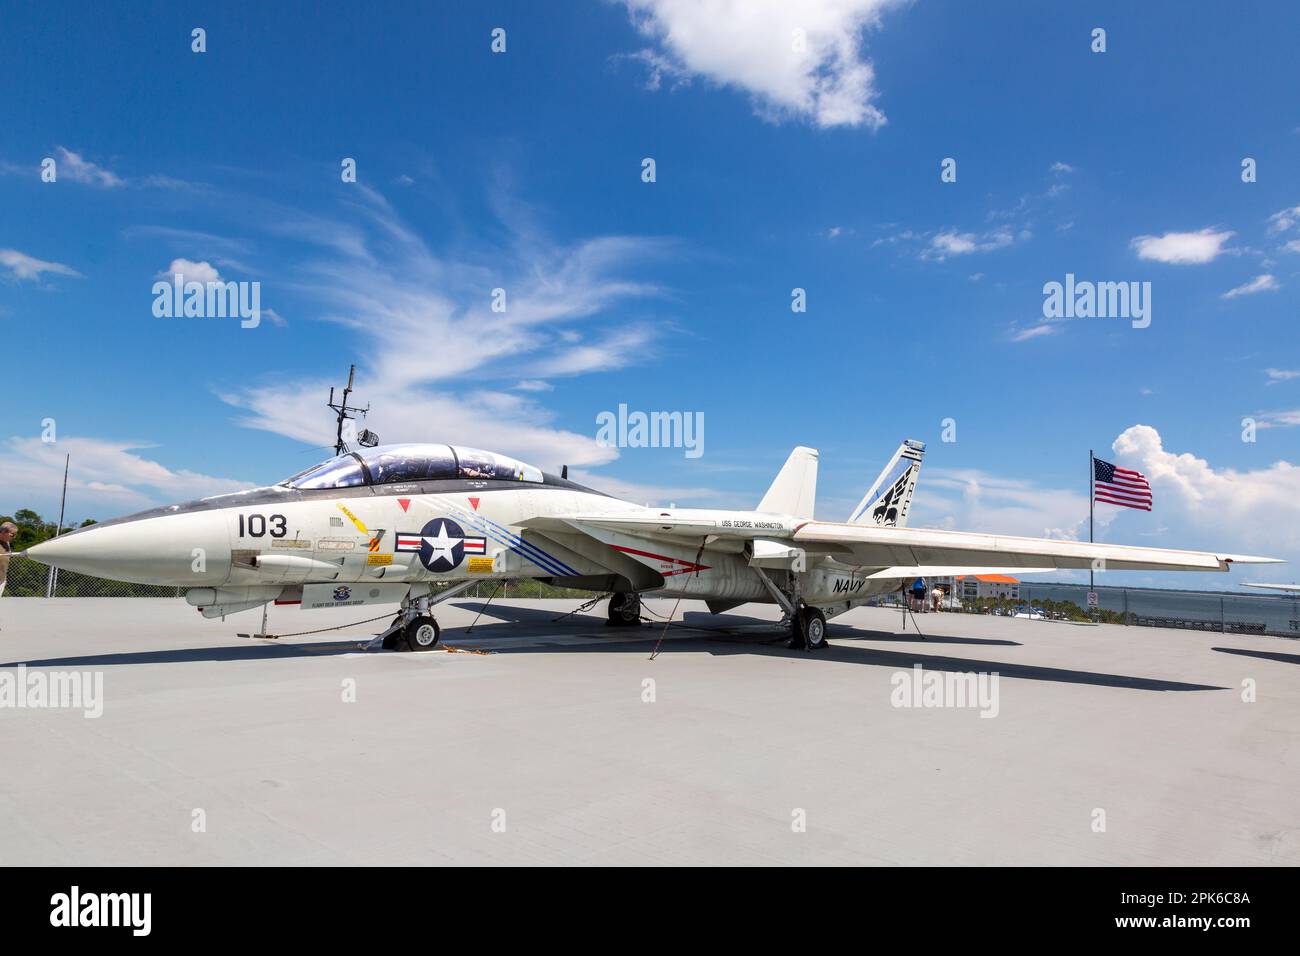 Im Patriot's Point Museum in Mount Pleasant, South Carolina, USA, befindet sich ein Kampfflugjet der US-Marine Grumman F-14 Tomcat. Stockfoto